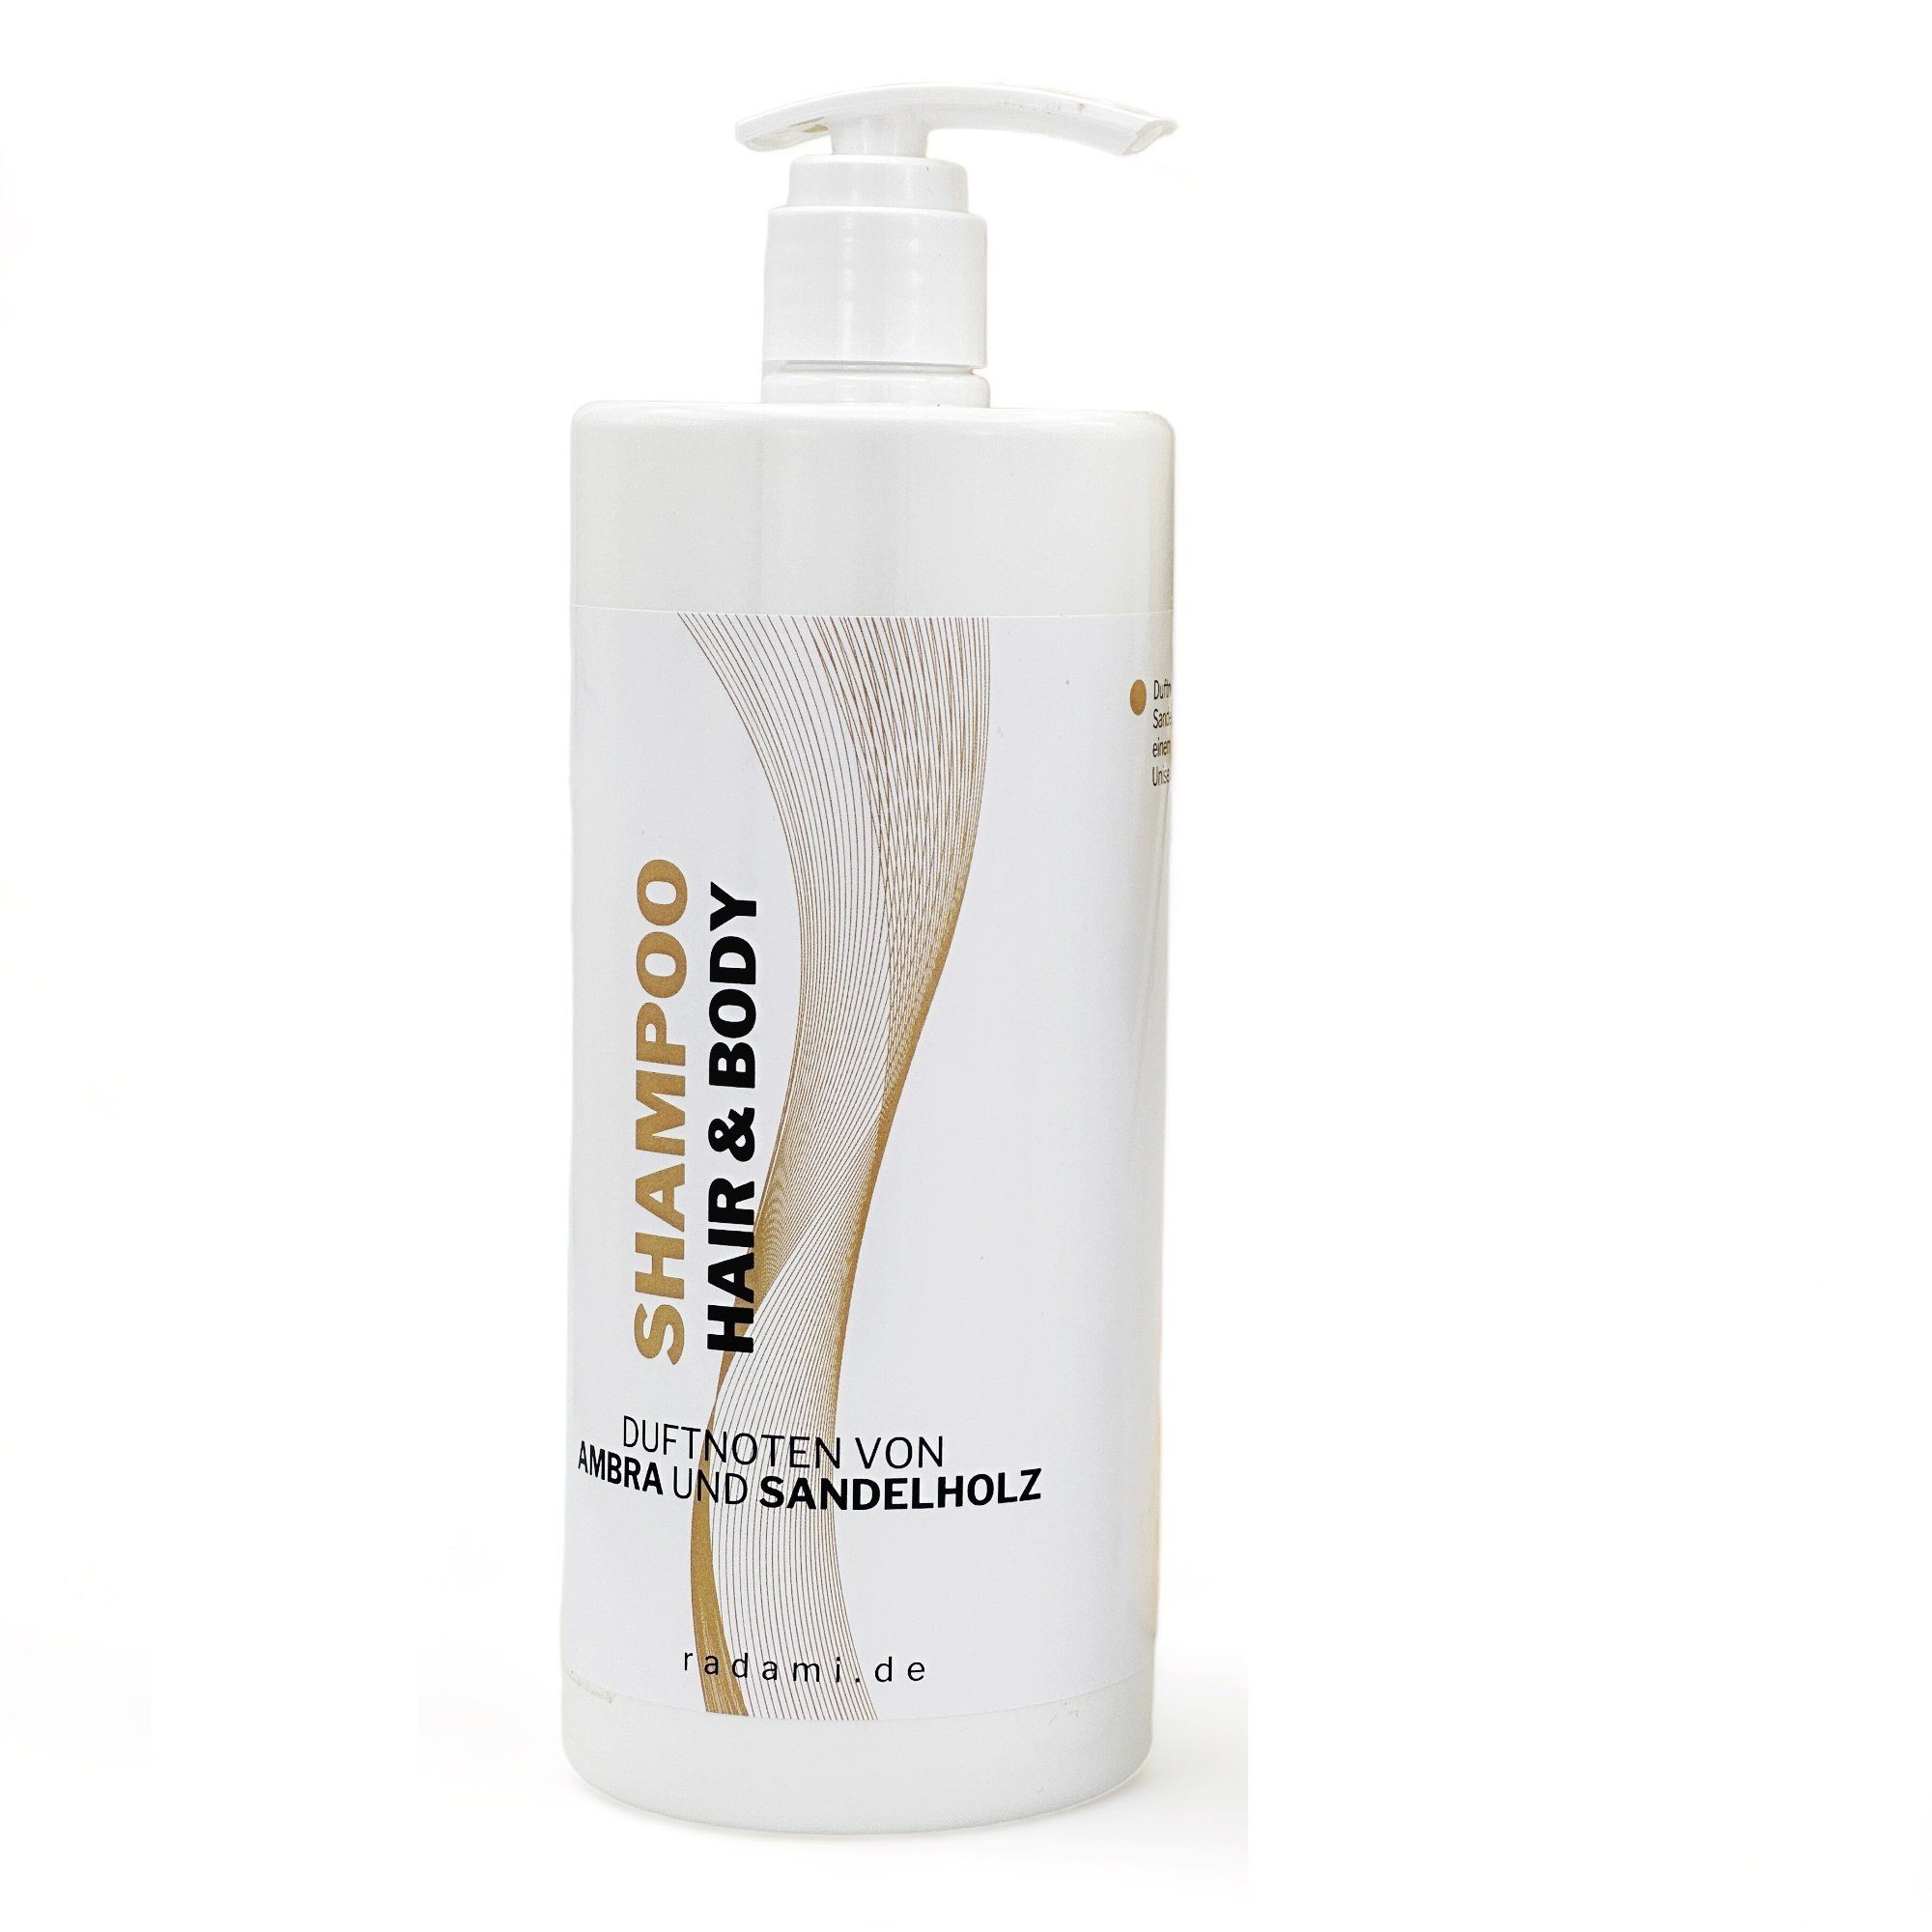 Radami Rohrreinigungspistole und Duschgel / Body Duft L 1 Hair Sandelholz Ambra Shampoo